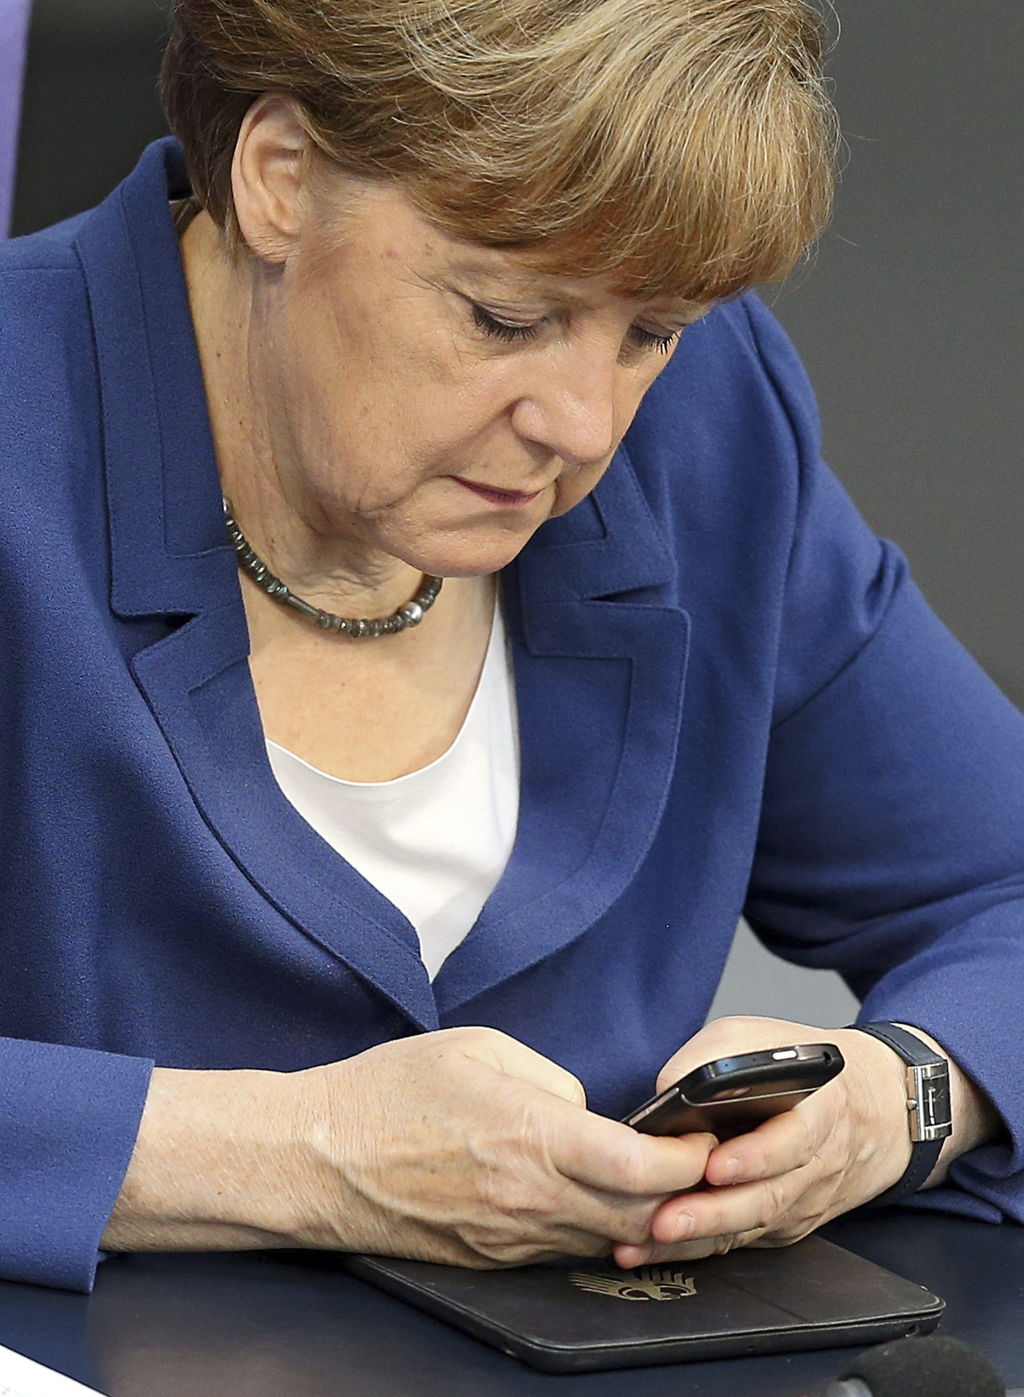 Urgencias. Ángela Merkel, principal cabeza política de Europa, convocó a una reunión extraordinaria.
